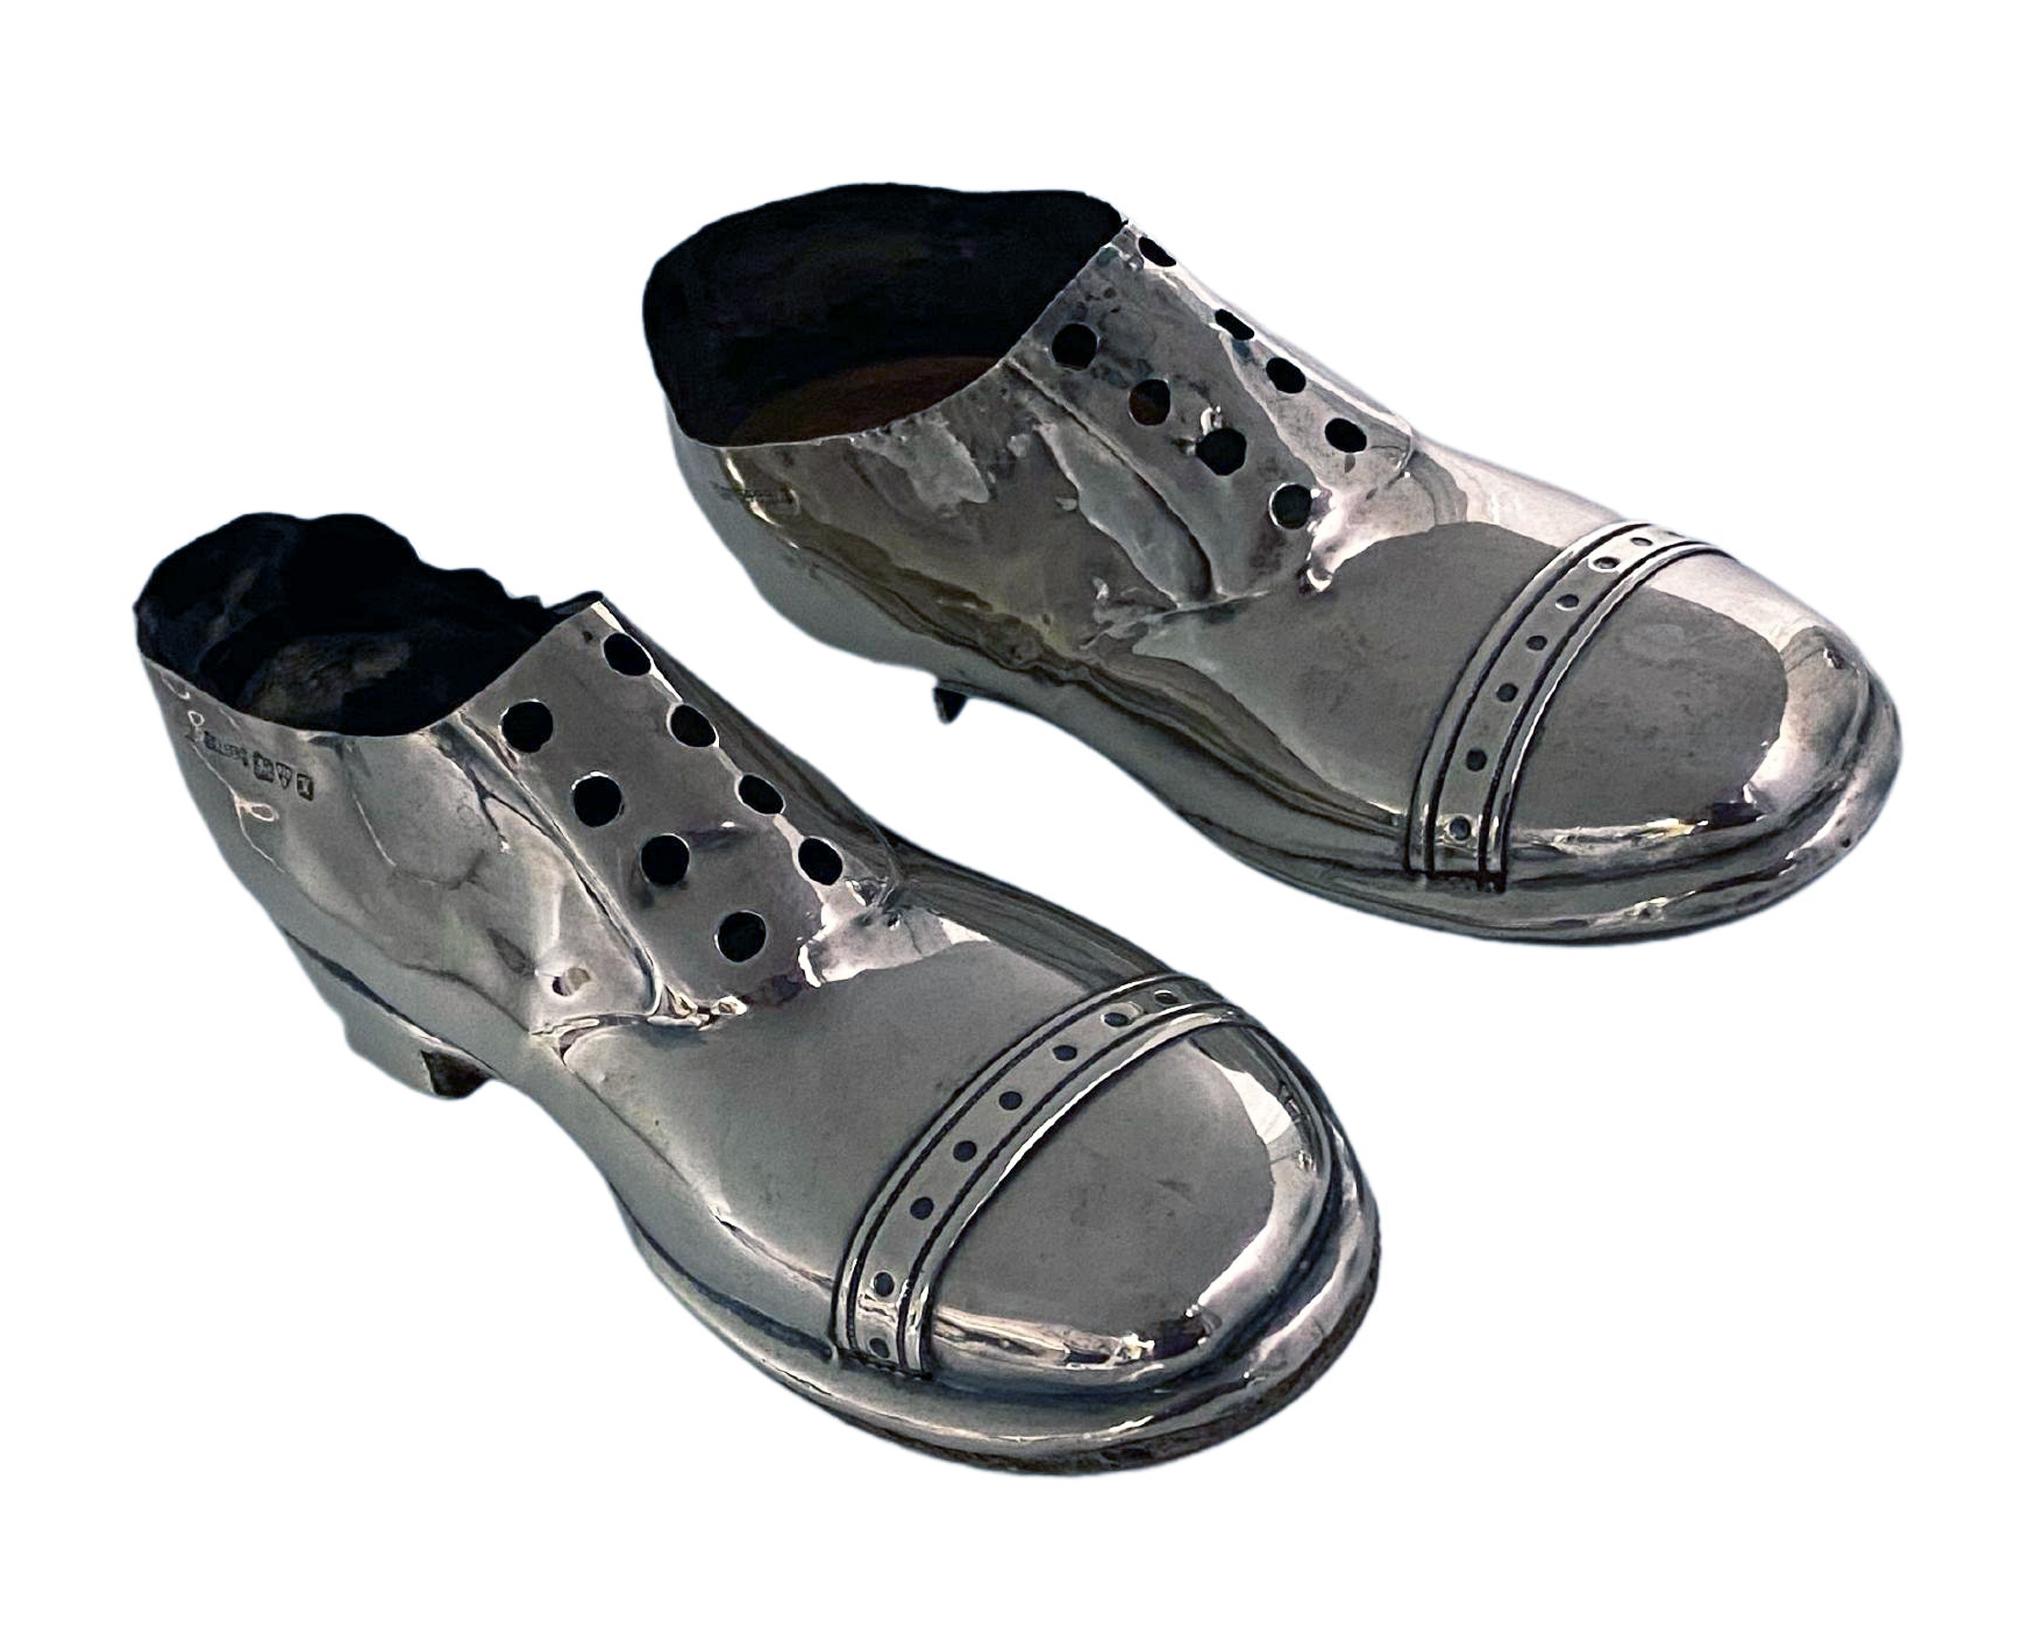 Paar silberne Schuhplättchen Chester 1910, S. Blankensee & Sohn. Es handelt sich um aufeinander abgestimmte Schuhe, die sich im Stil ähneln, aber nicht identisch sind. Beide in Brogue-Form, mit Holzsohle und beide gestempelt für Chester 1910 mit